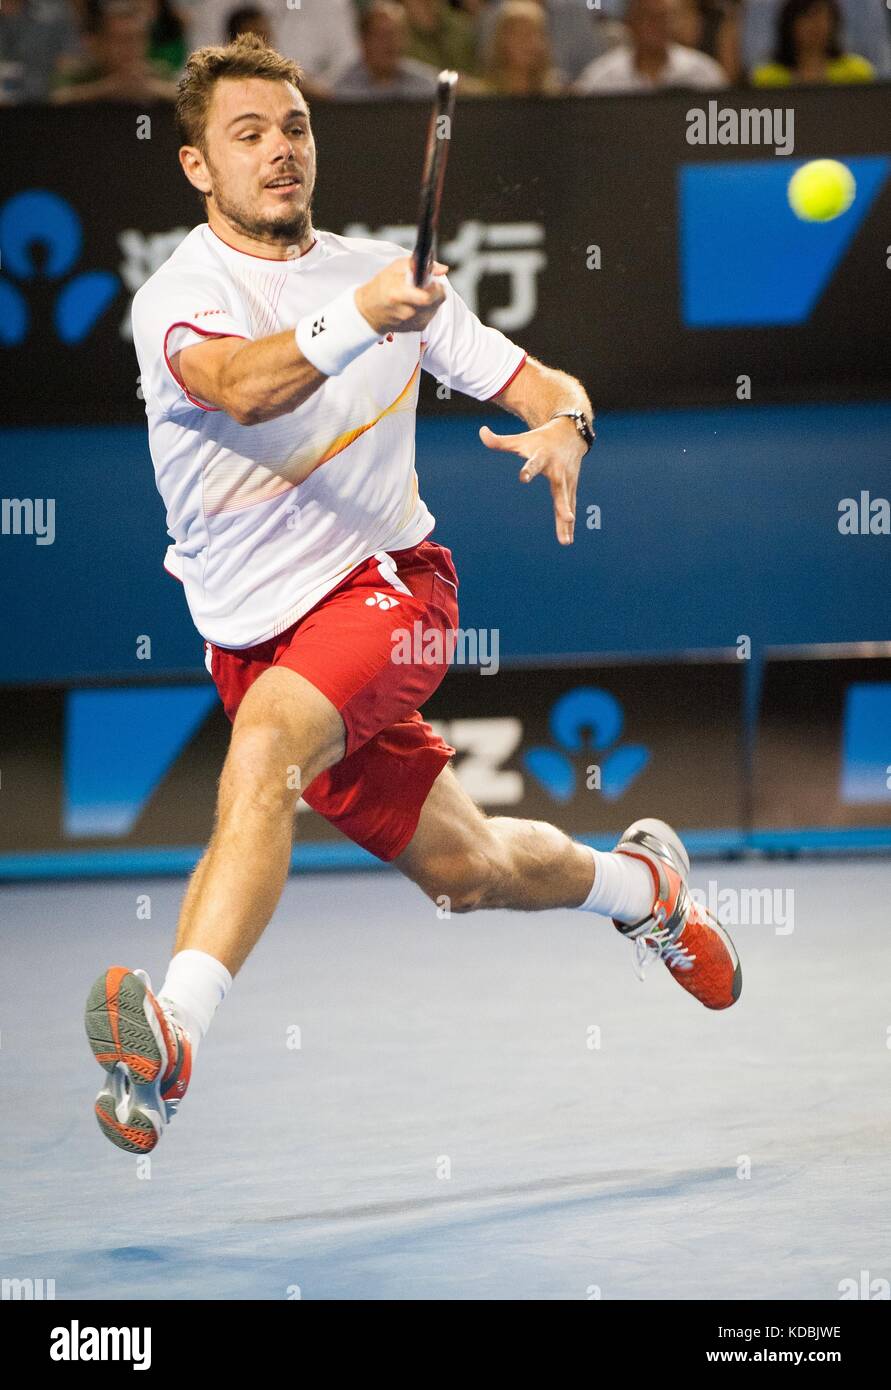 Stanislaus Wawrinka de Suiza derrotó al jugador número uno en el mundo R. Nadal de España para reclamar el 2014 Abierto Australiano de Hombres Singles Champ Foto de stock